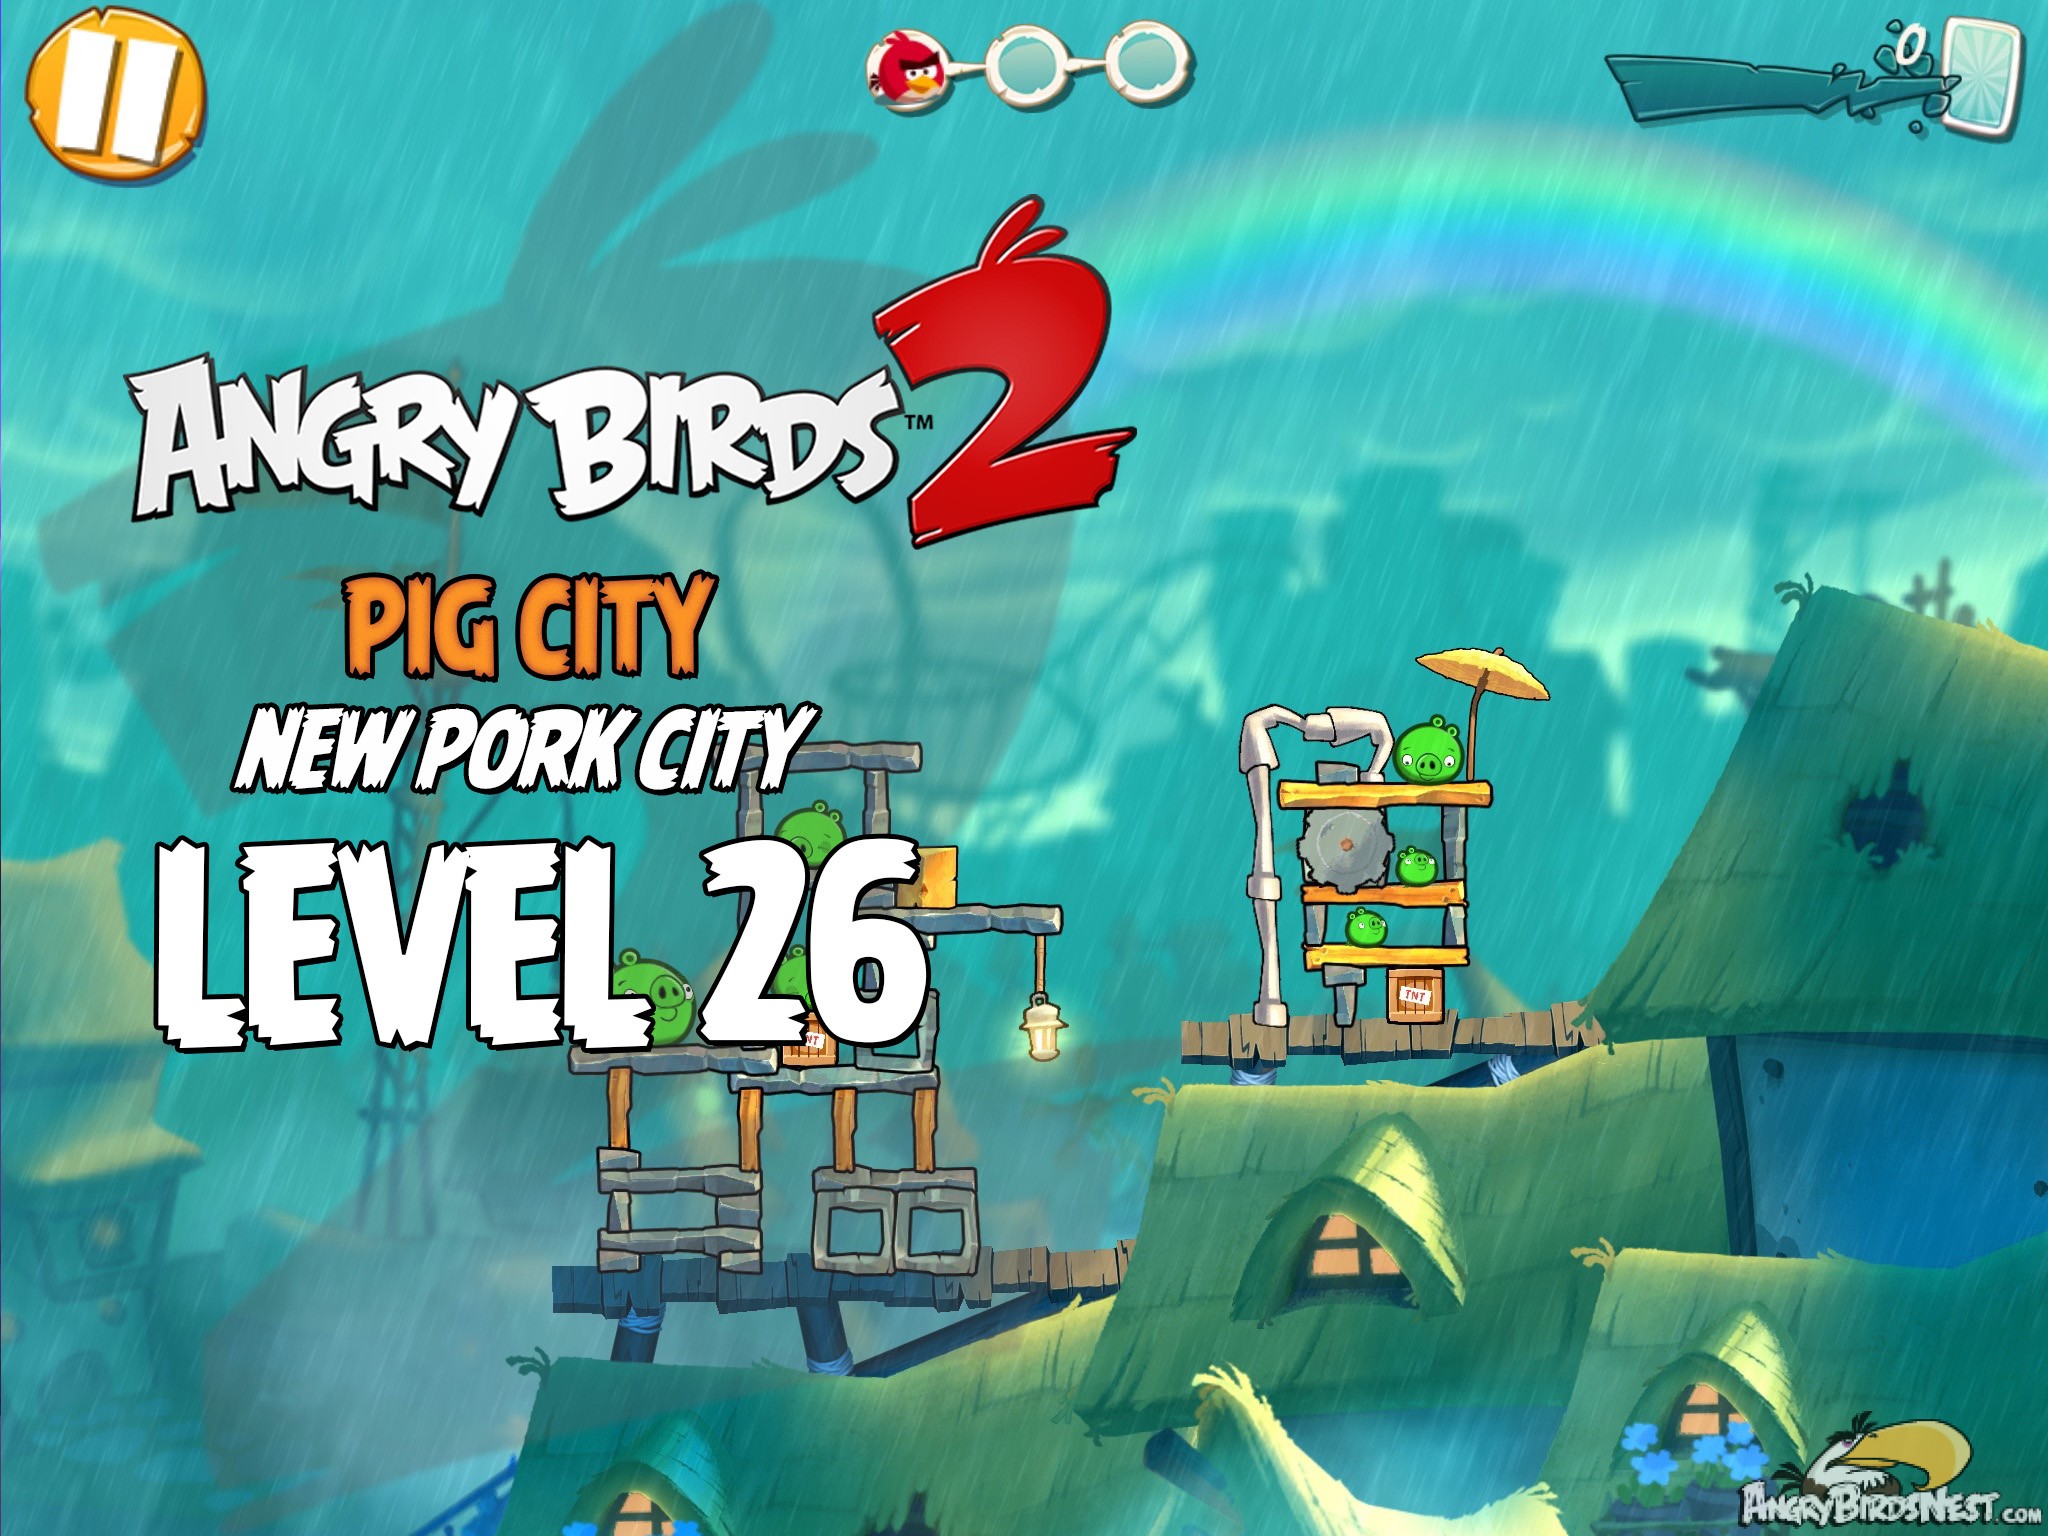 Angry Birds 2 Pig City New Pork City Level 26